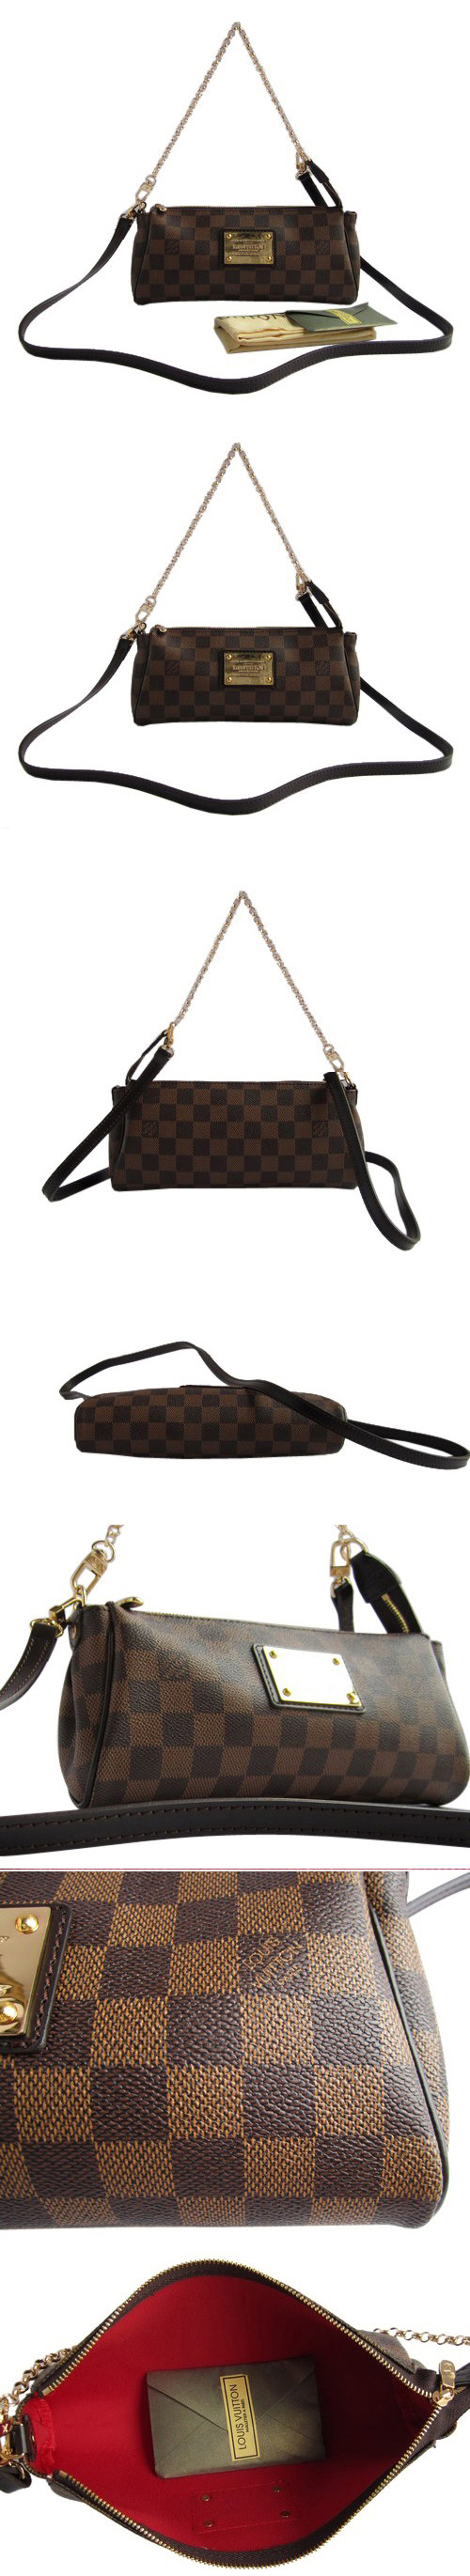 ブランド通販Louis Vuitton-ルイヴィトン-bag-N51135-brown激安屋-ブランドコピー